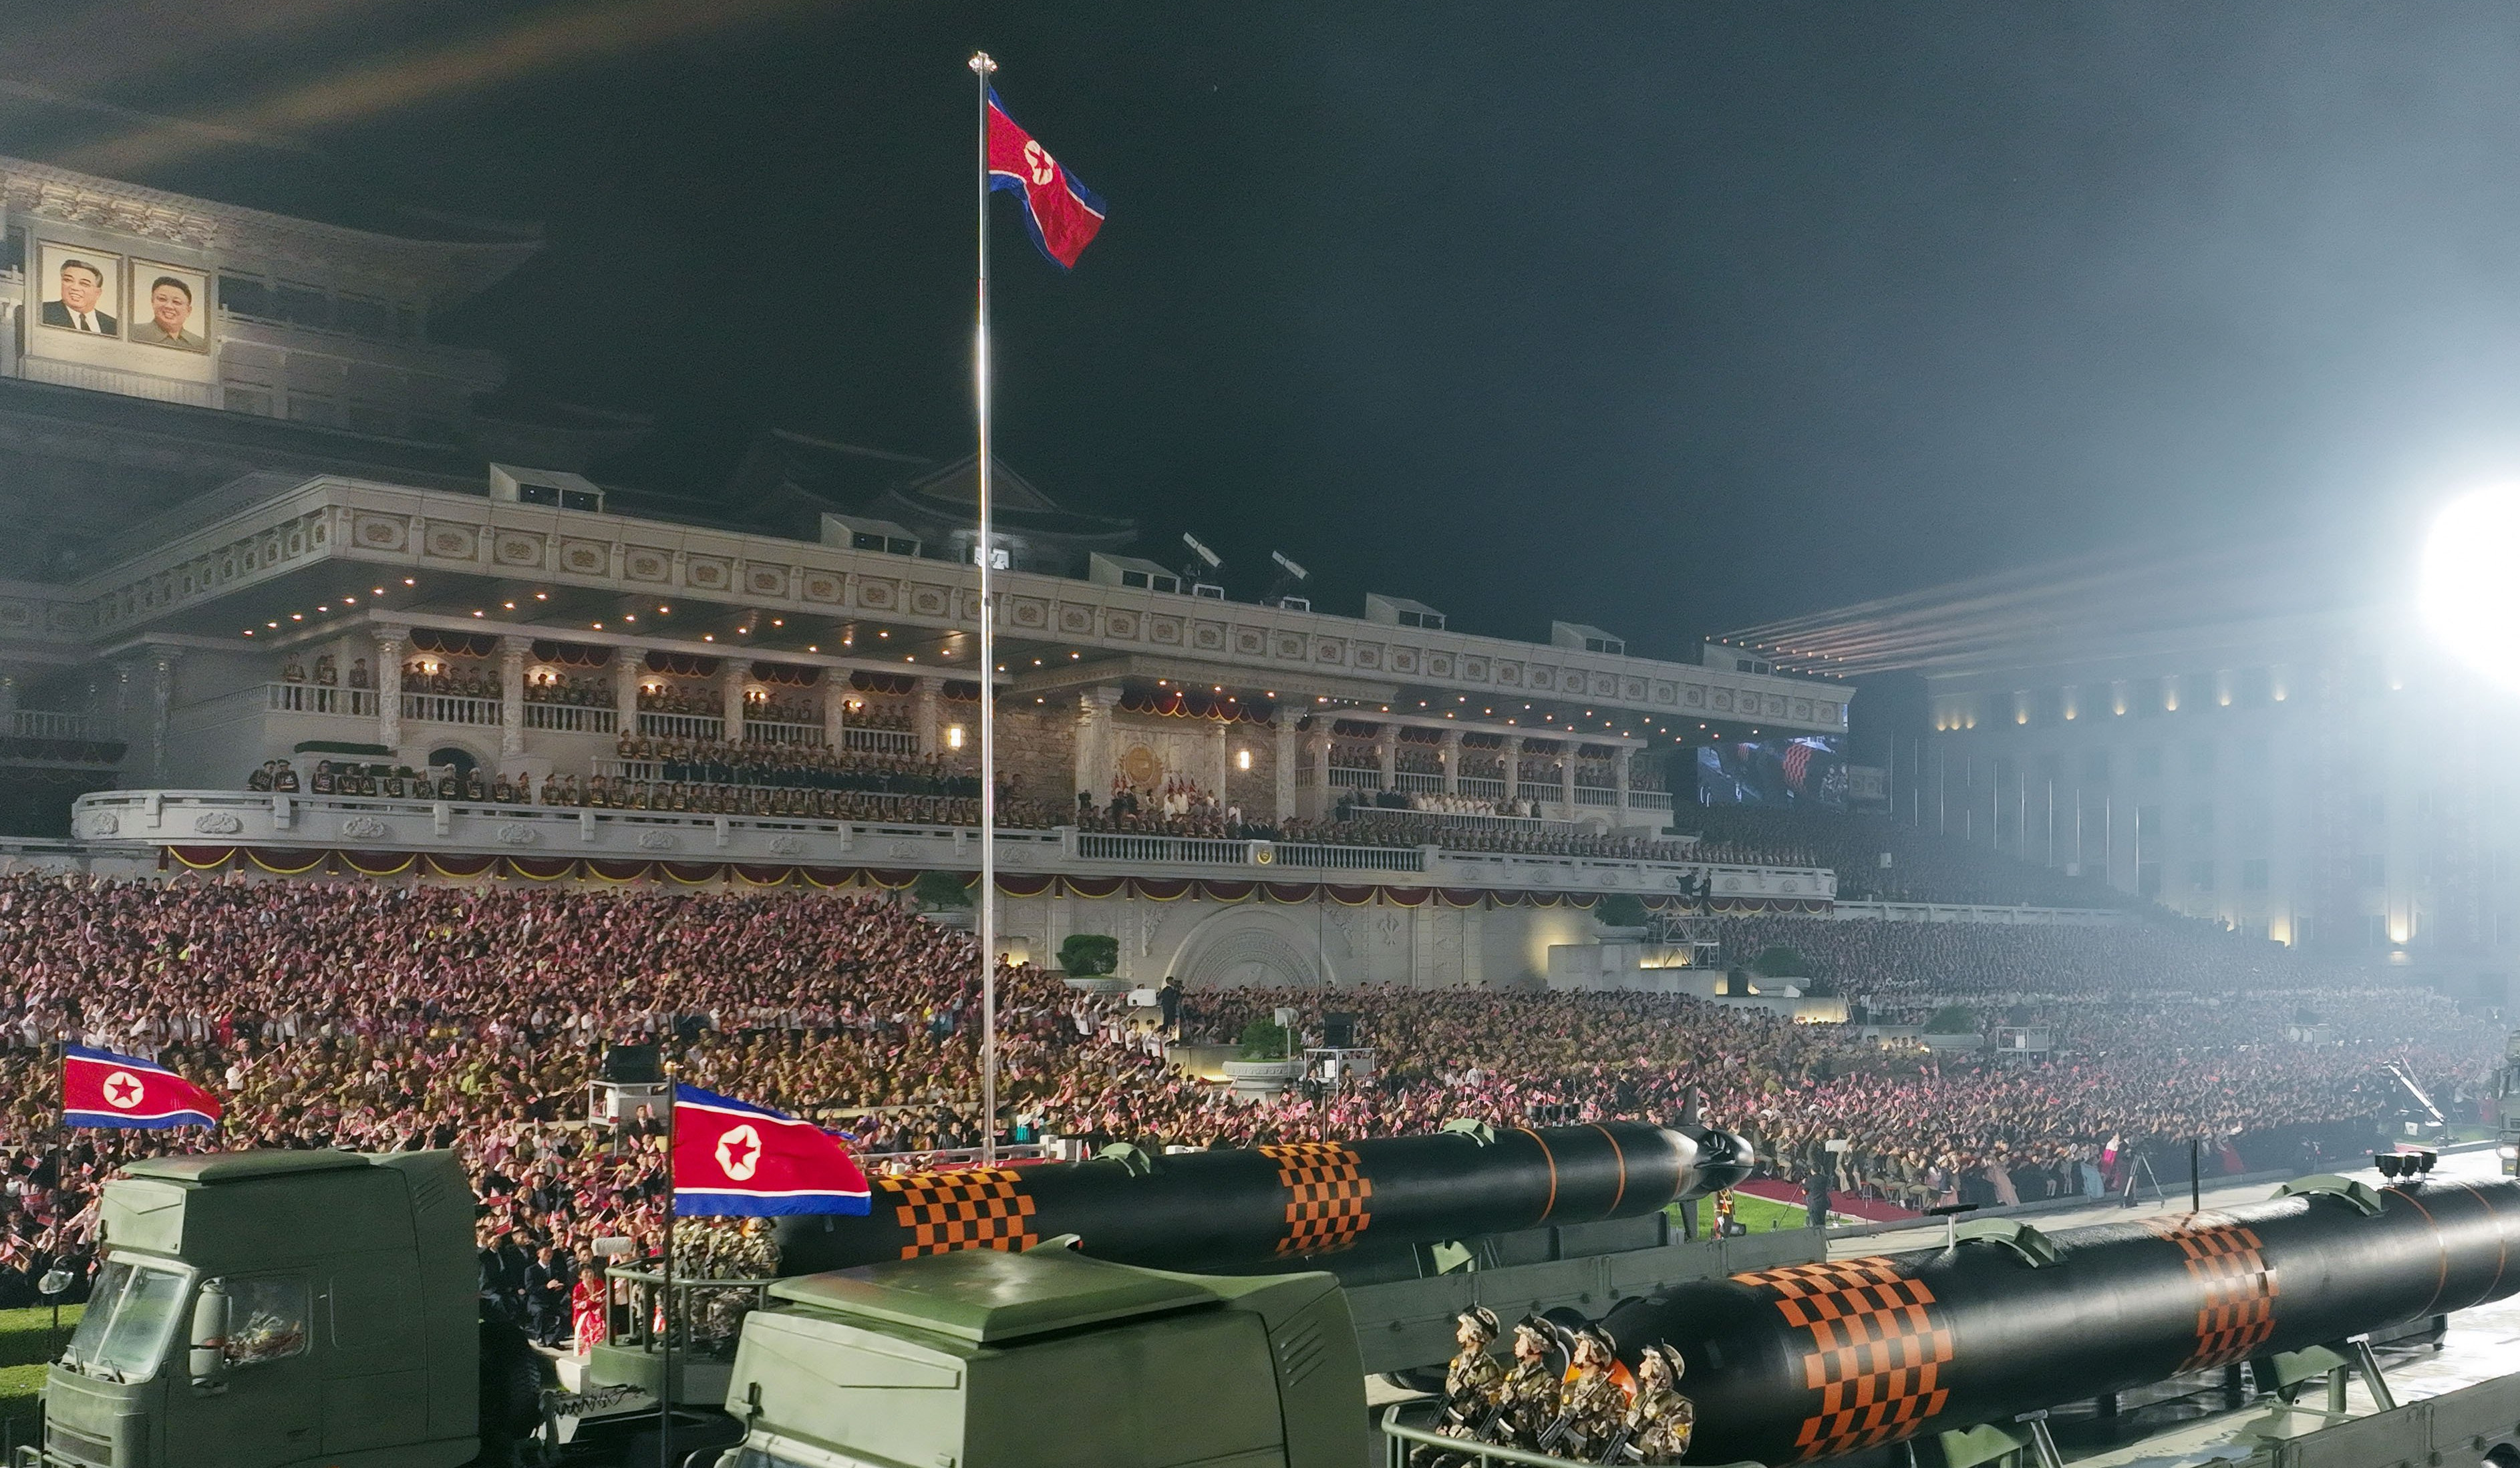 ԱՄՆ-ն և Հարավային Կորեան թանկ կվճարեն մասշտաբային զորավարժությունների համար. ԿԺԴՀ